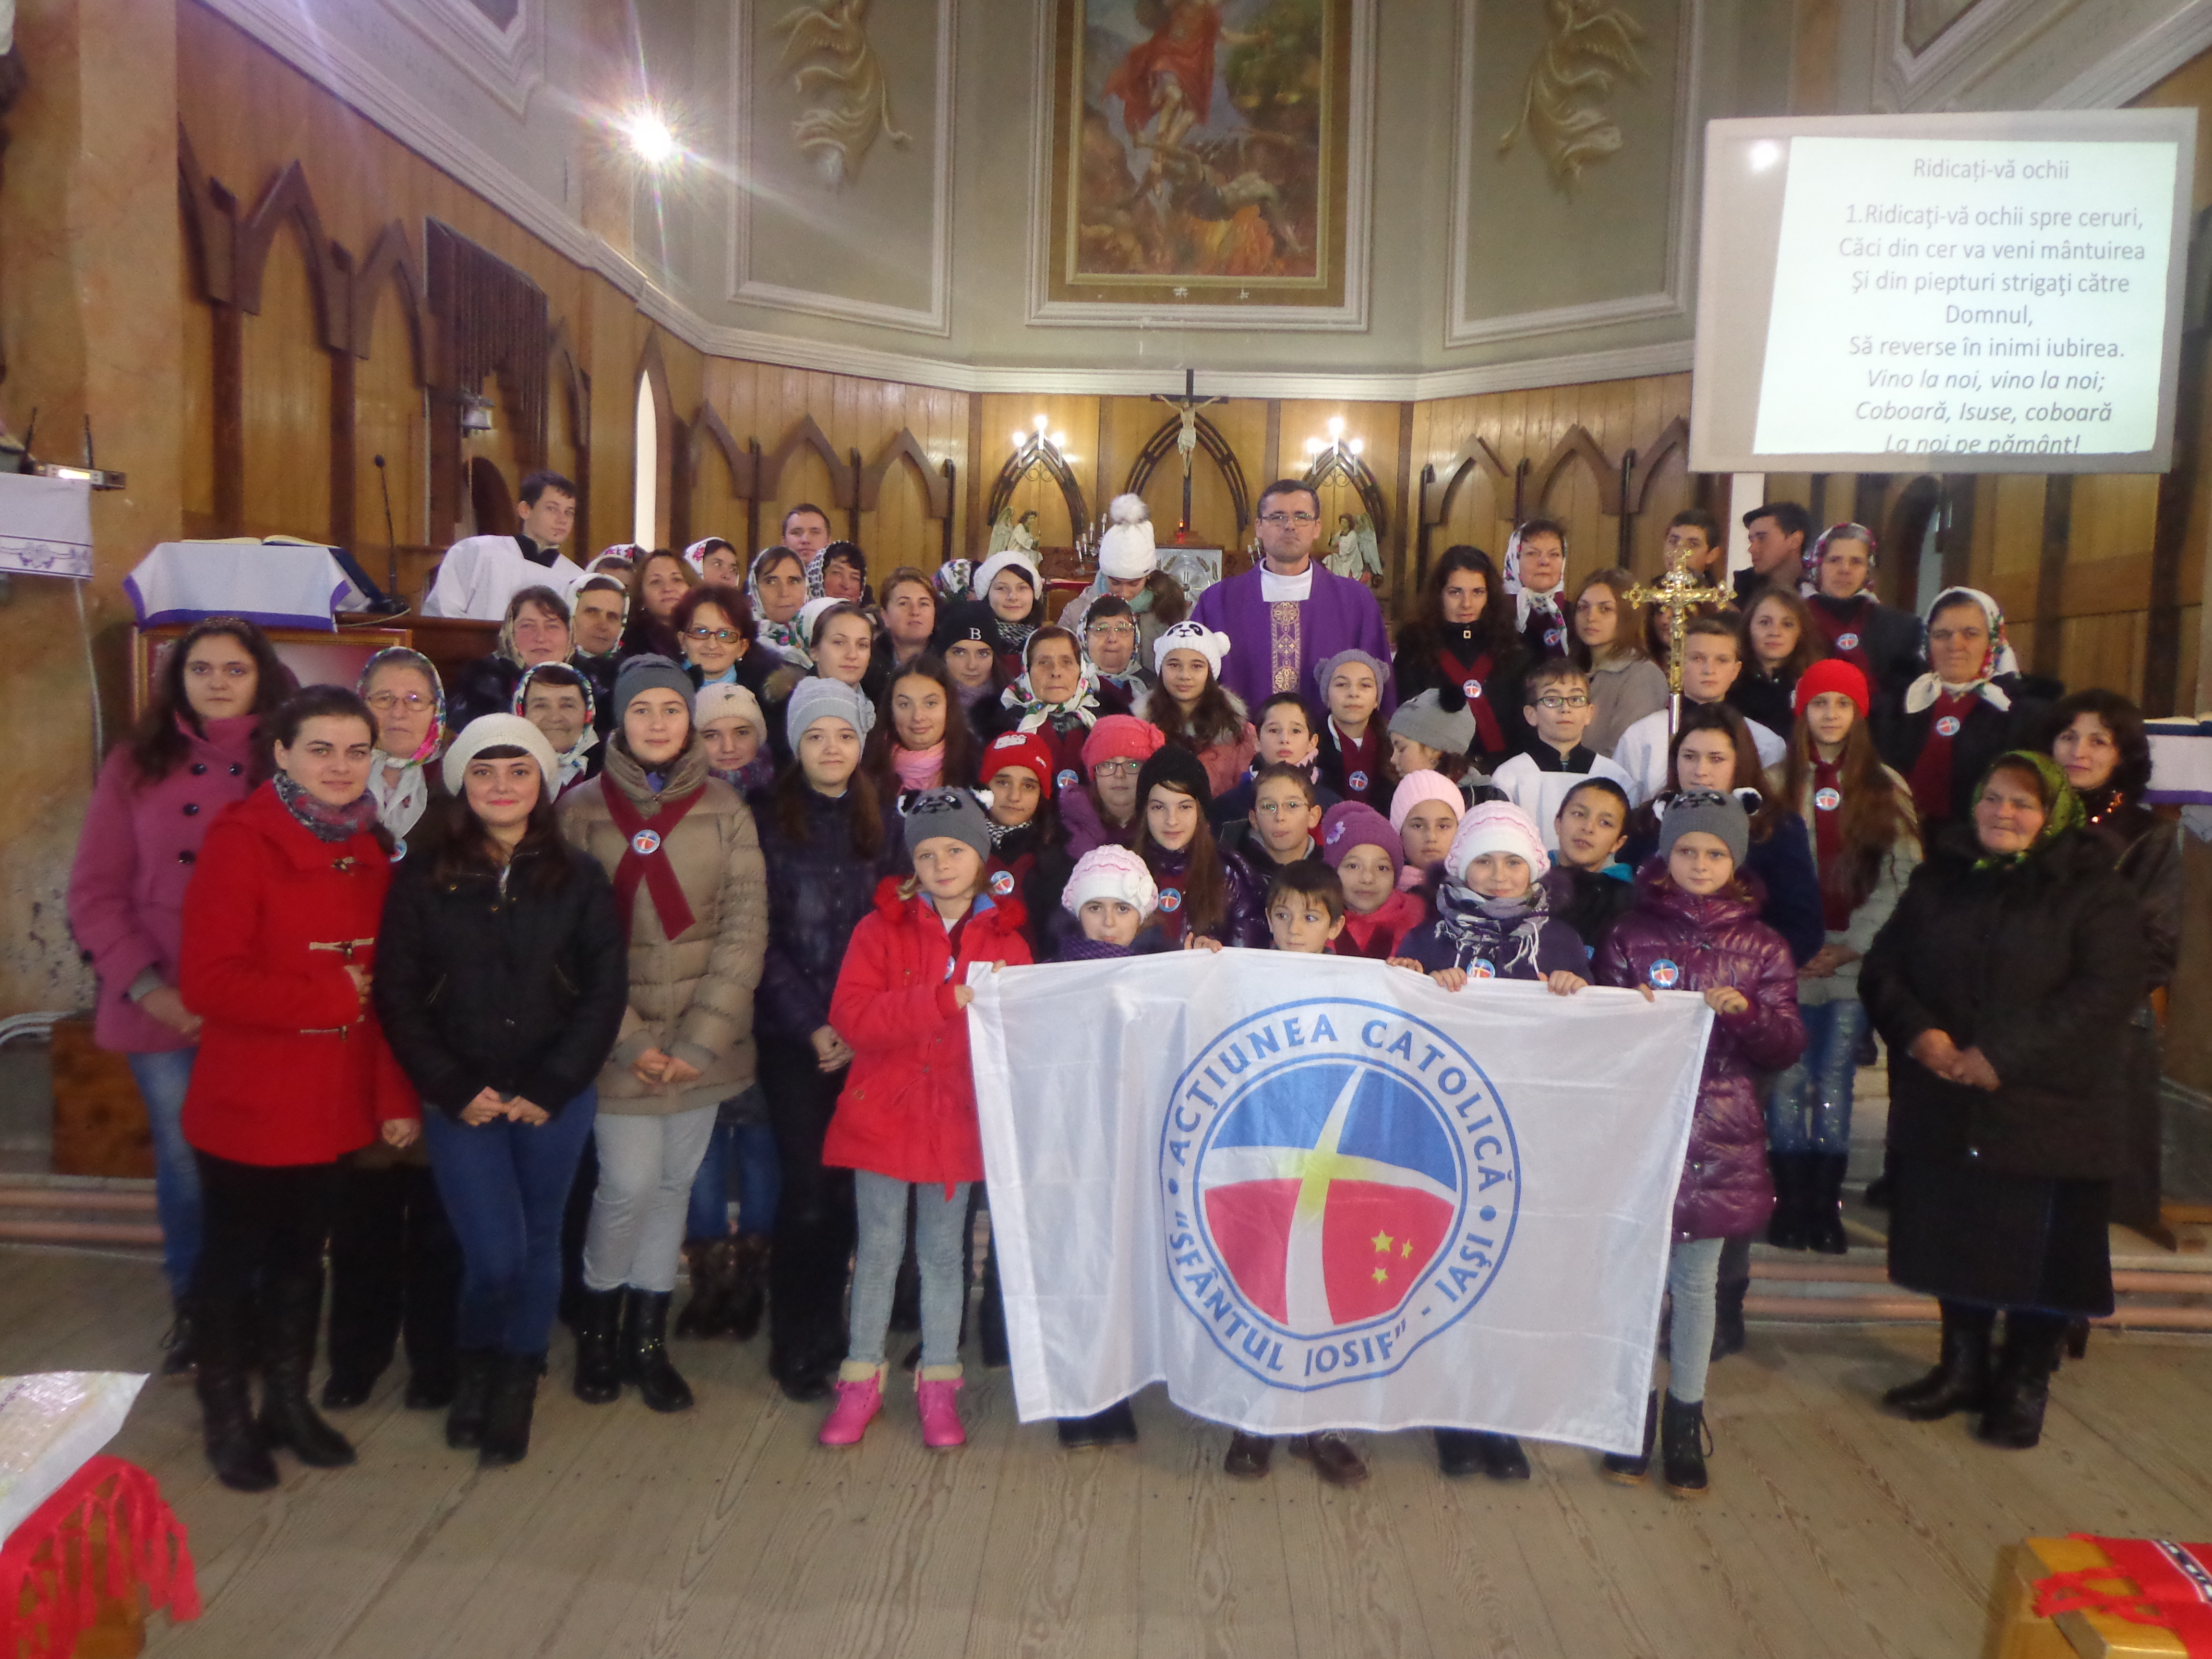 Adeziunea la Acțiunea catolică (7 decembrie 2014)